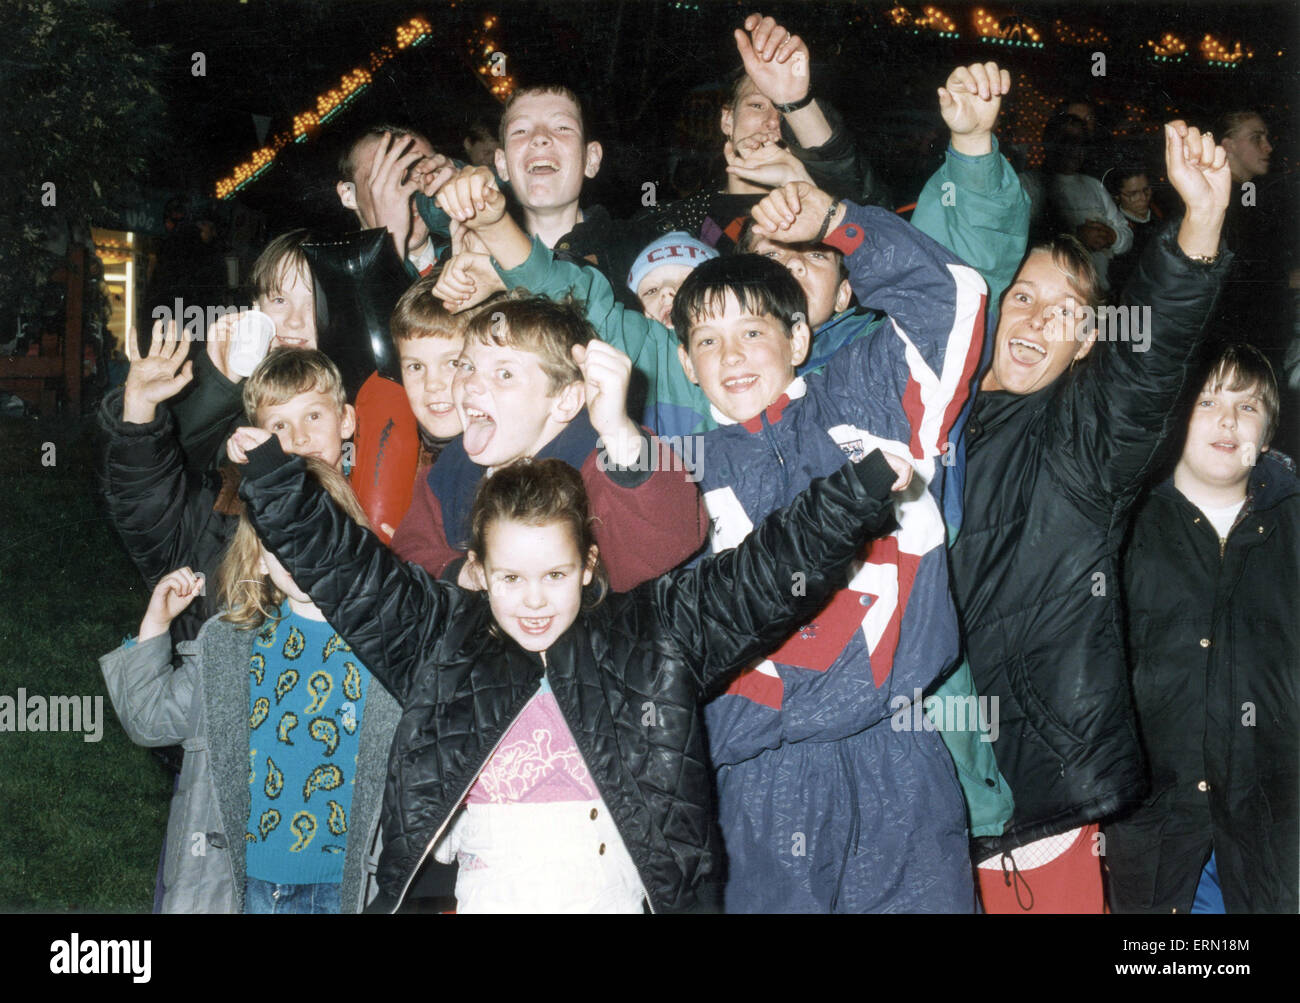 Jugendliche begrüssen Manchester 2000 Olympischen Gebot Hoffnungen am Piccadilly Gardens Feuerwerk, September 1993. Vor der offiziellen Ankündigung auf, die den Olympischen Spielen 2000, Tag der Entscheidung, 23. September 1993 veranstaltet. Stockfoto